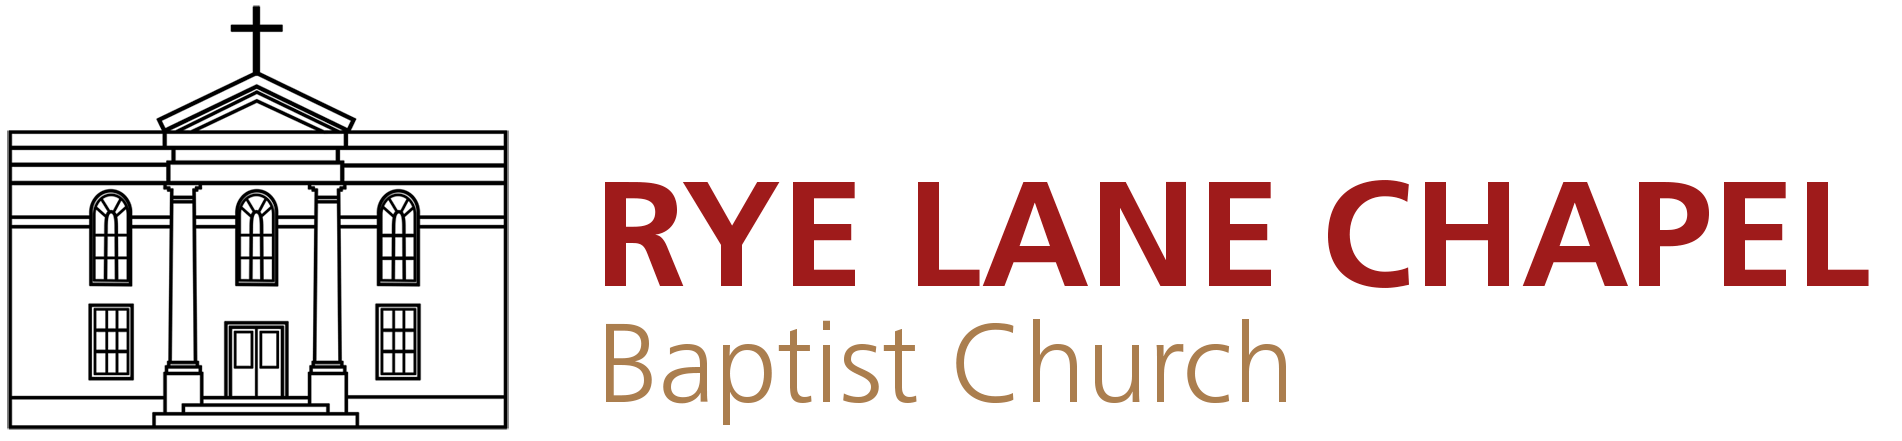 Rye Lane Chapel